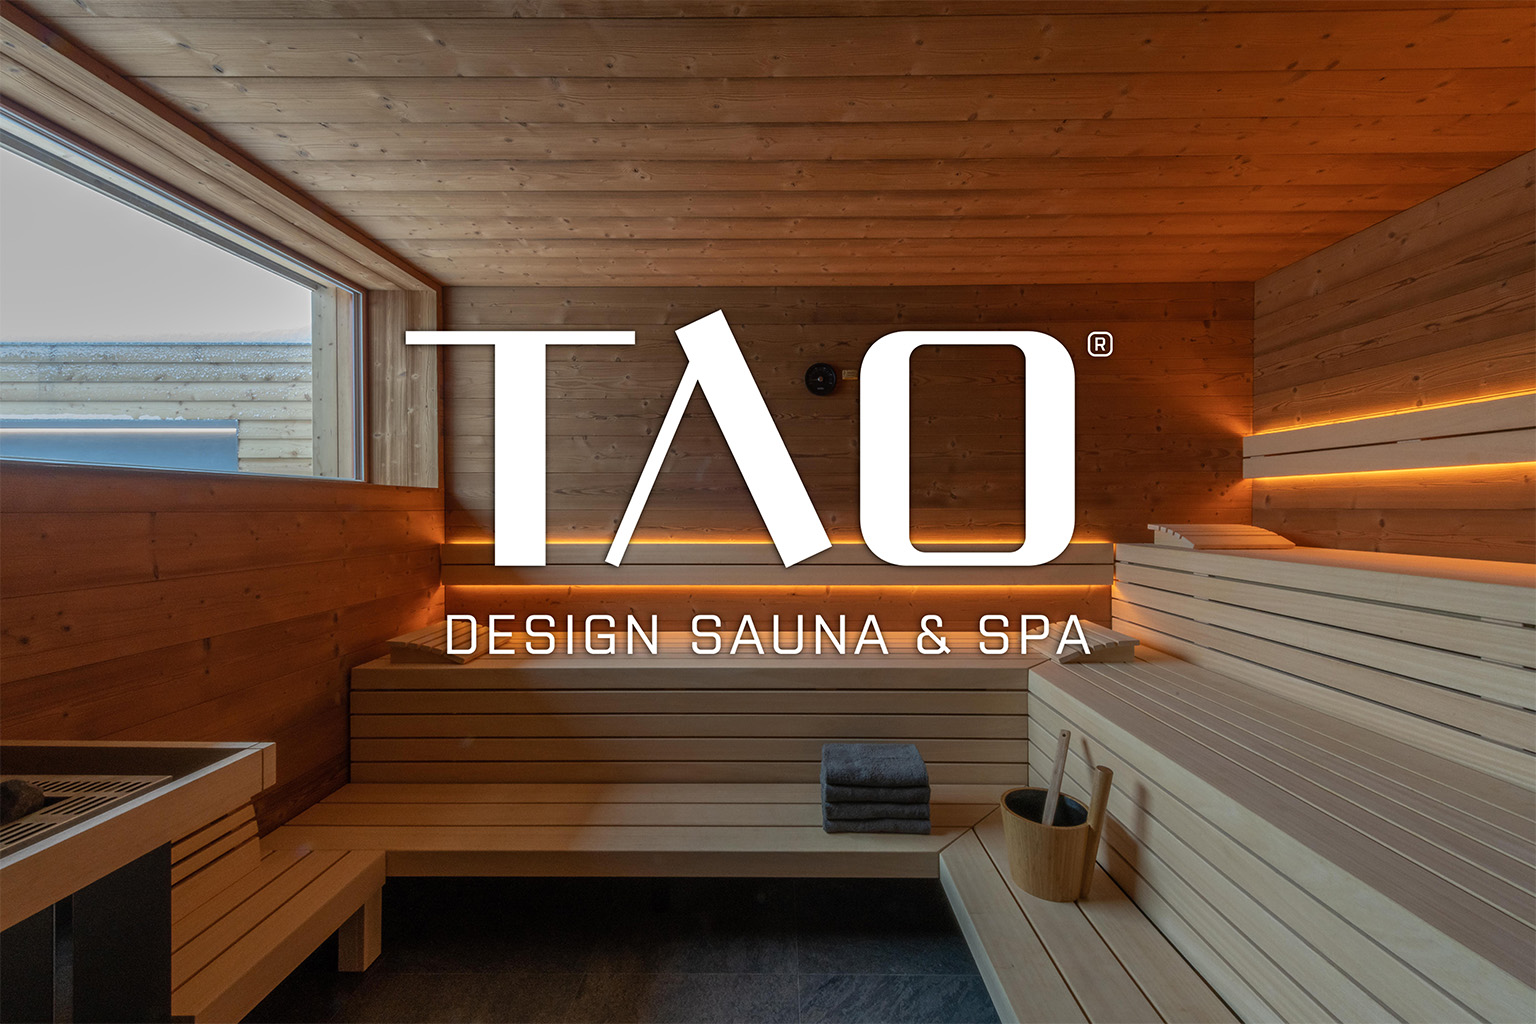 Meet TAO – A Czech manufacturer of premium saunas